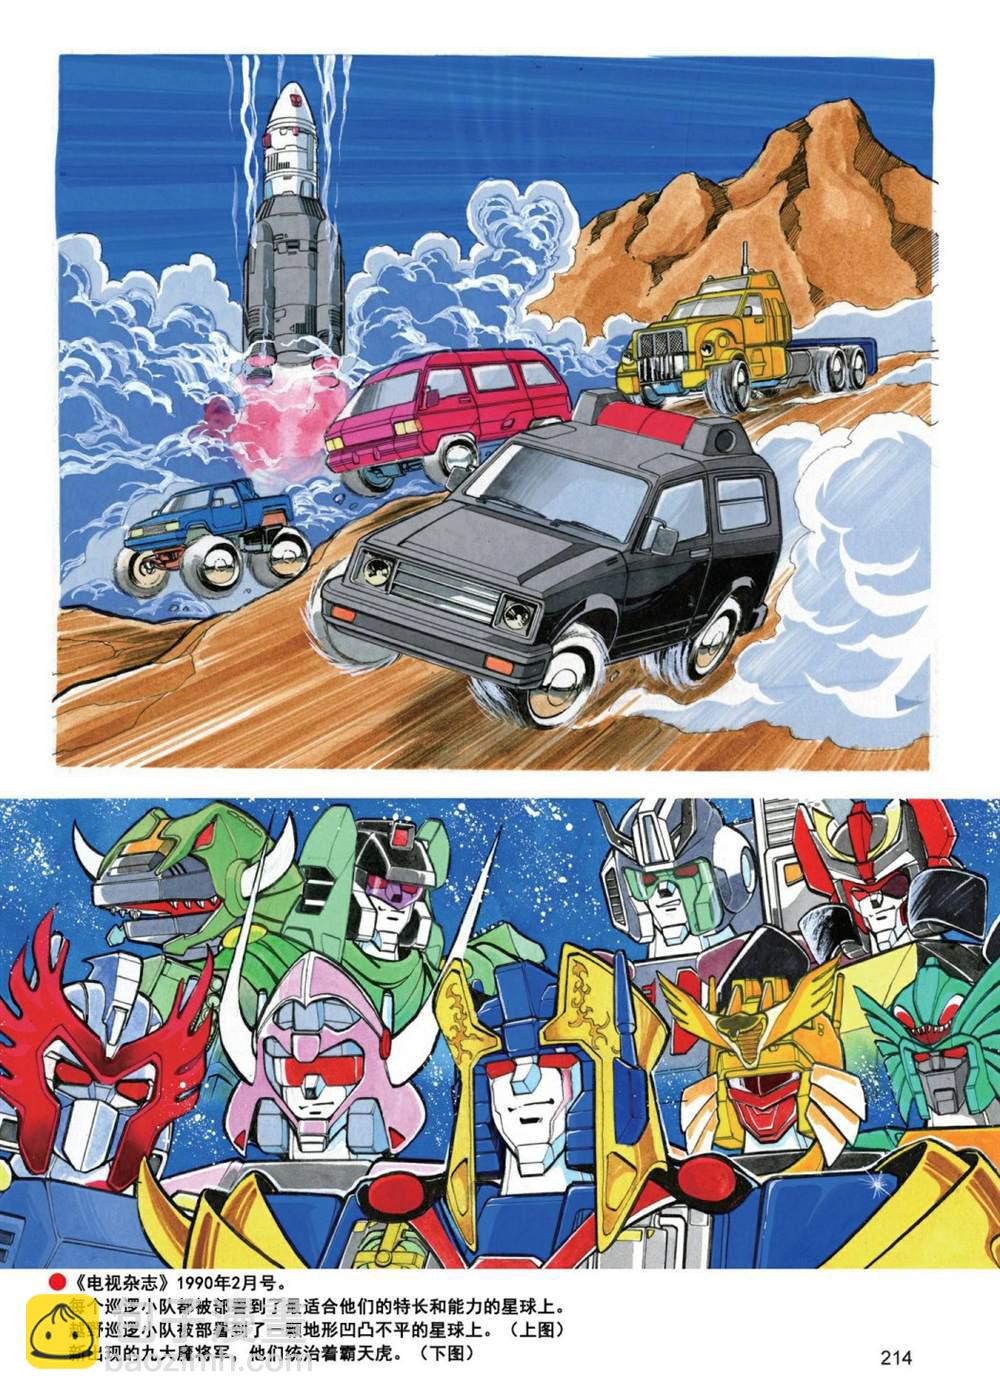 變形金剛日版G1雜誌插畫 - 《戰鬥吧！超機械生命體變形金剛：地帶》 - 2